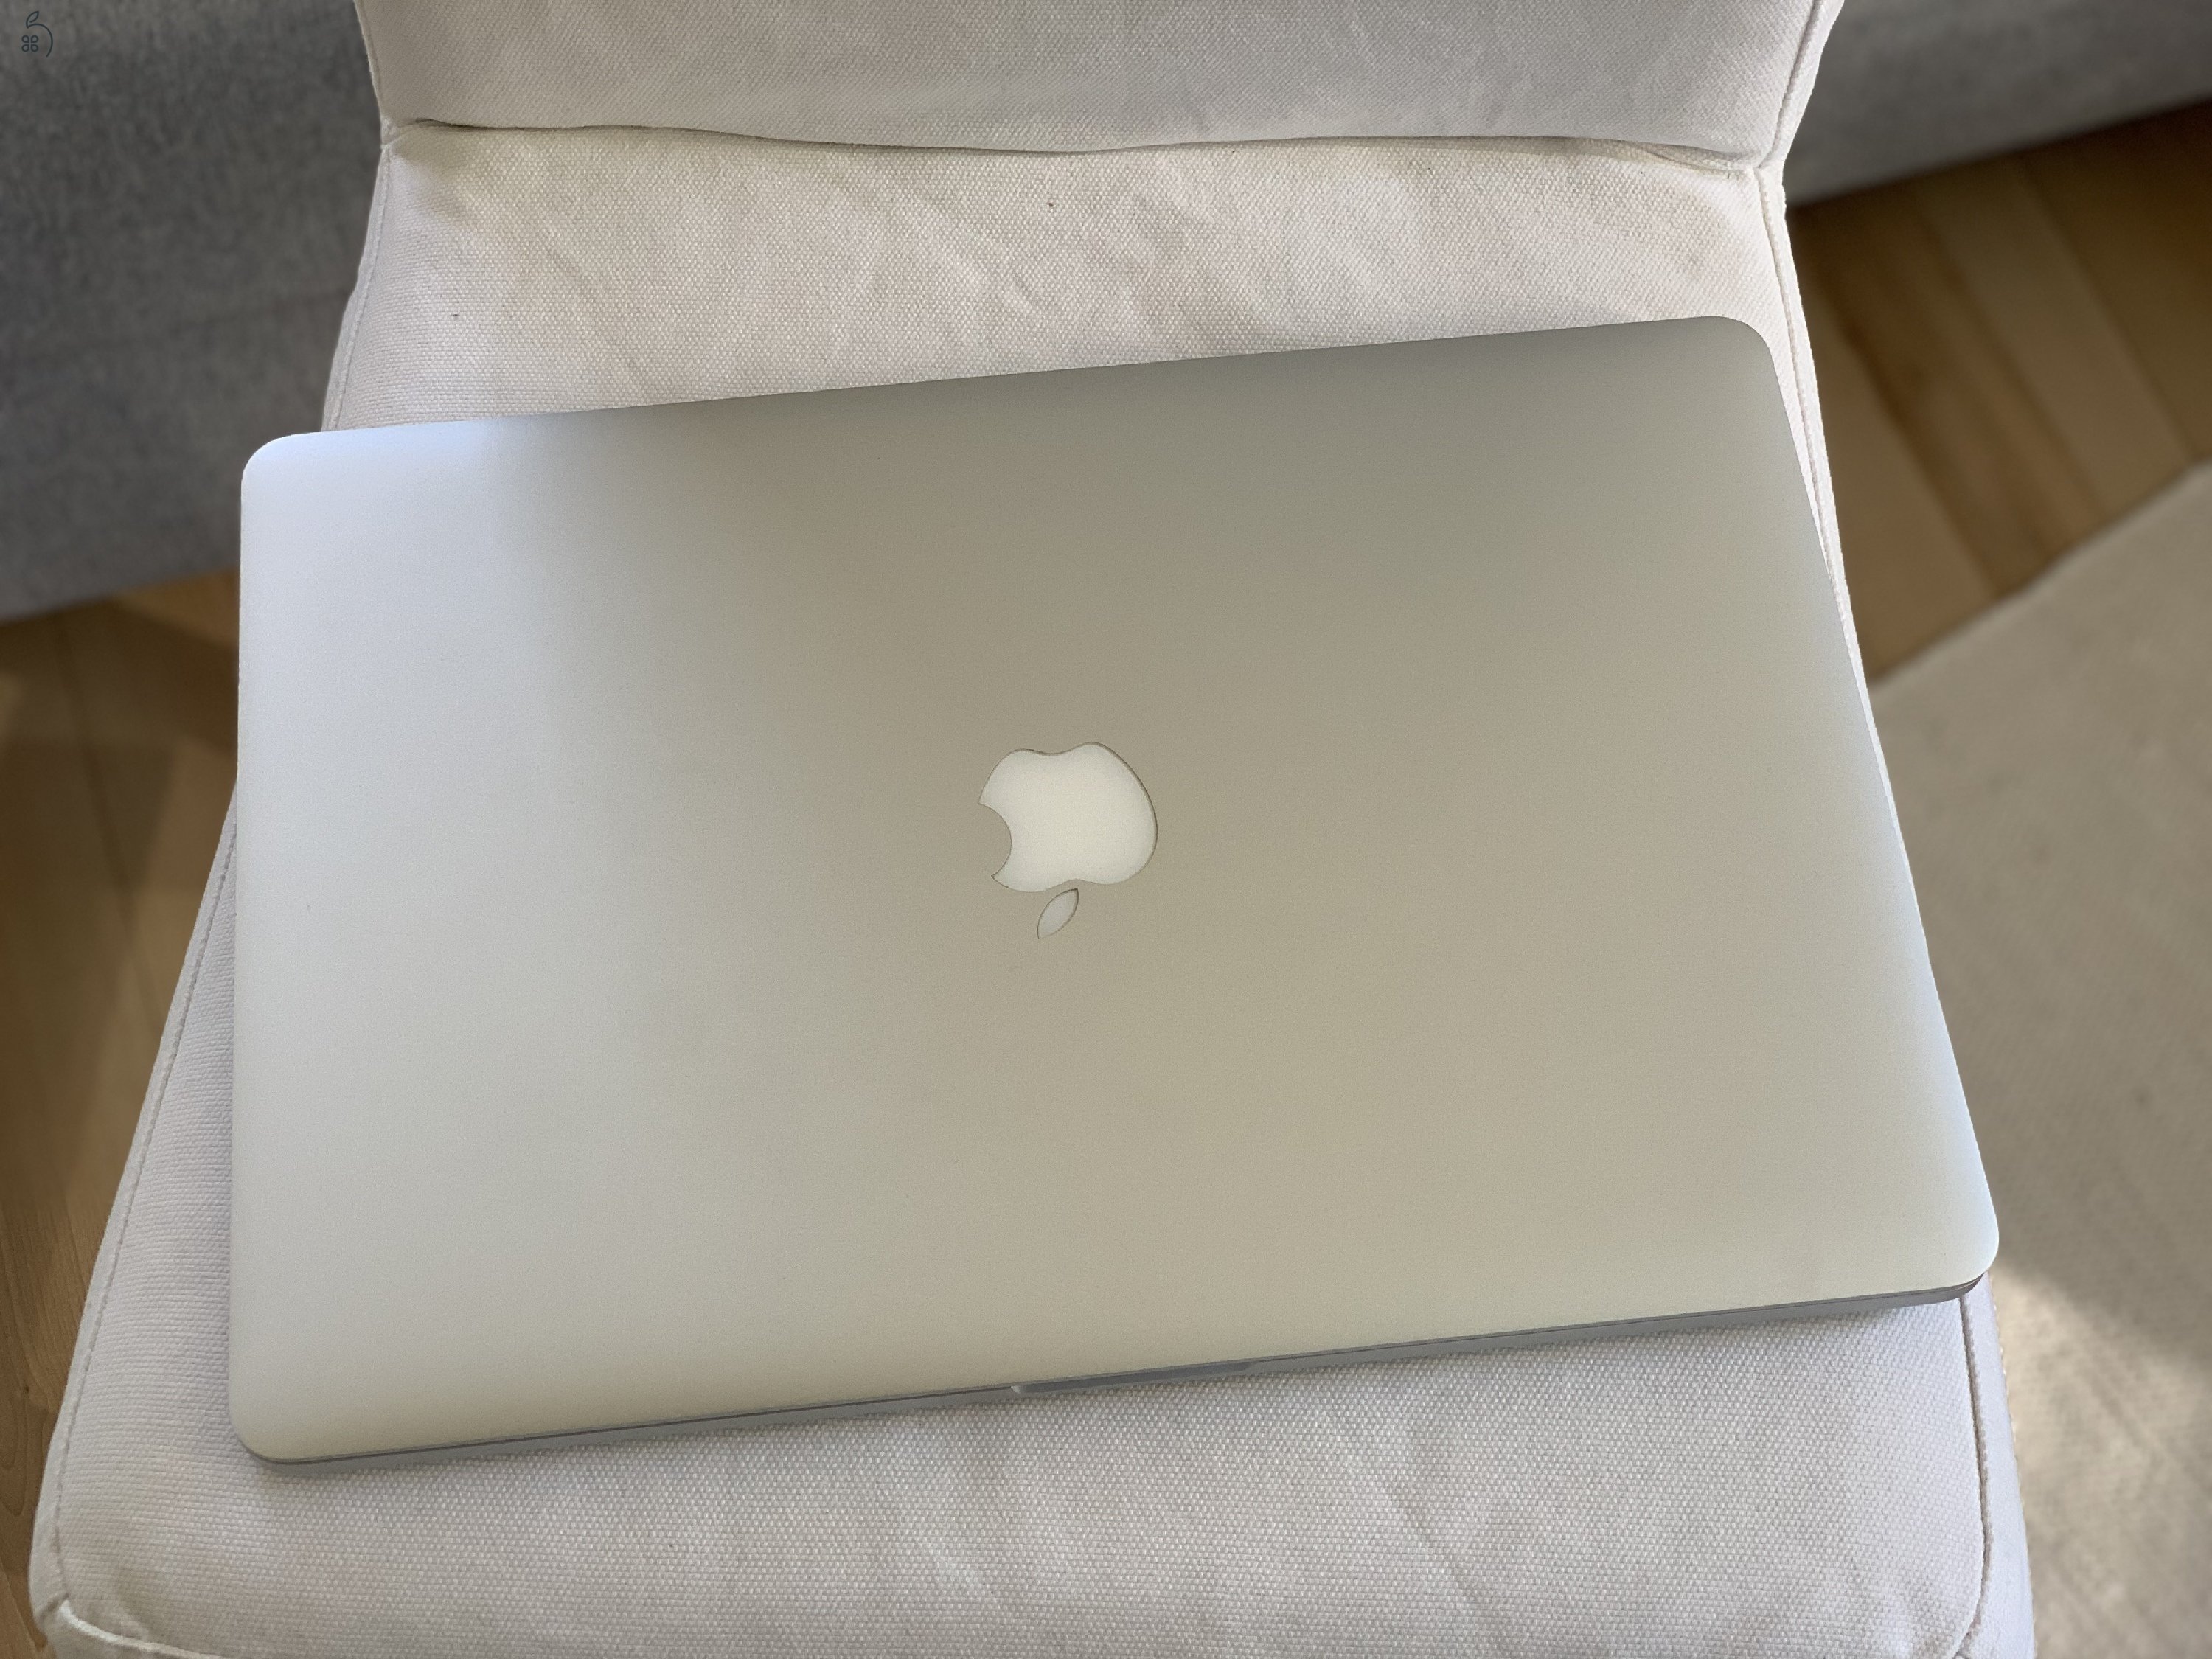 MacBook Pro (15” retina mid 2014 i7 16GB 512GB SSD)